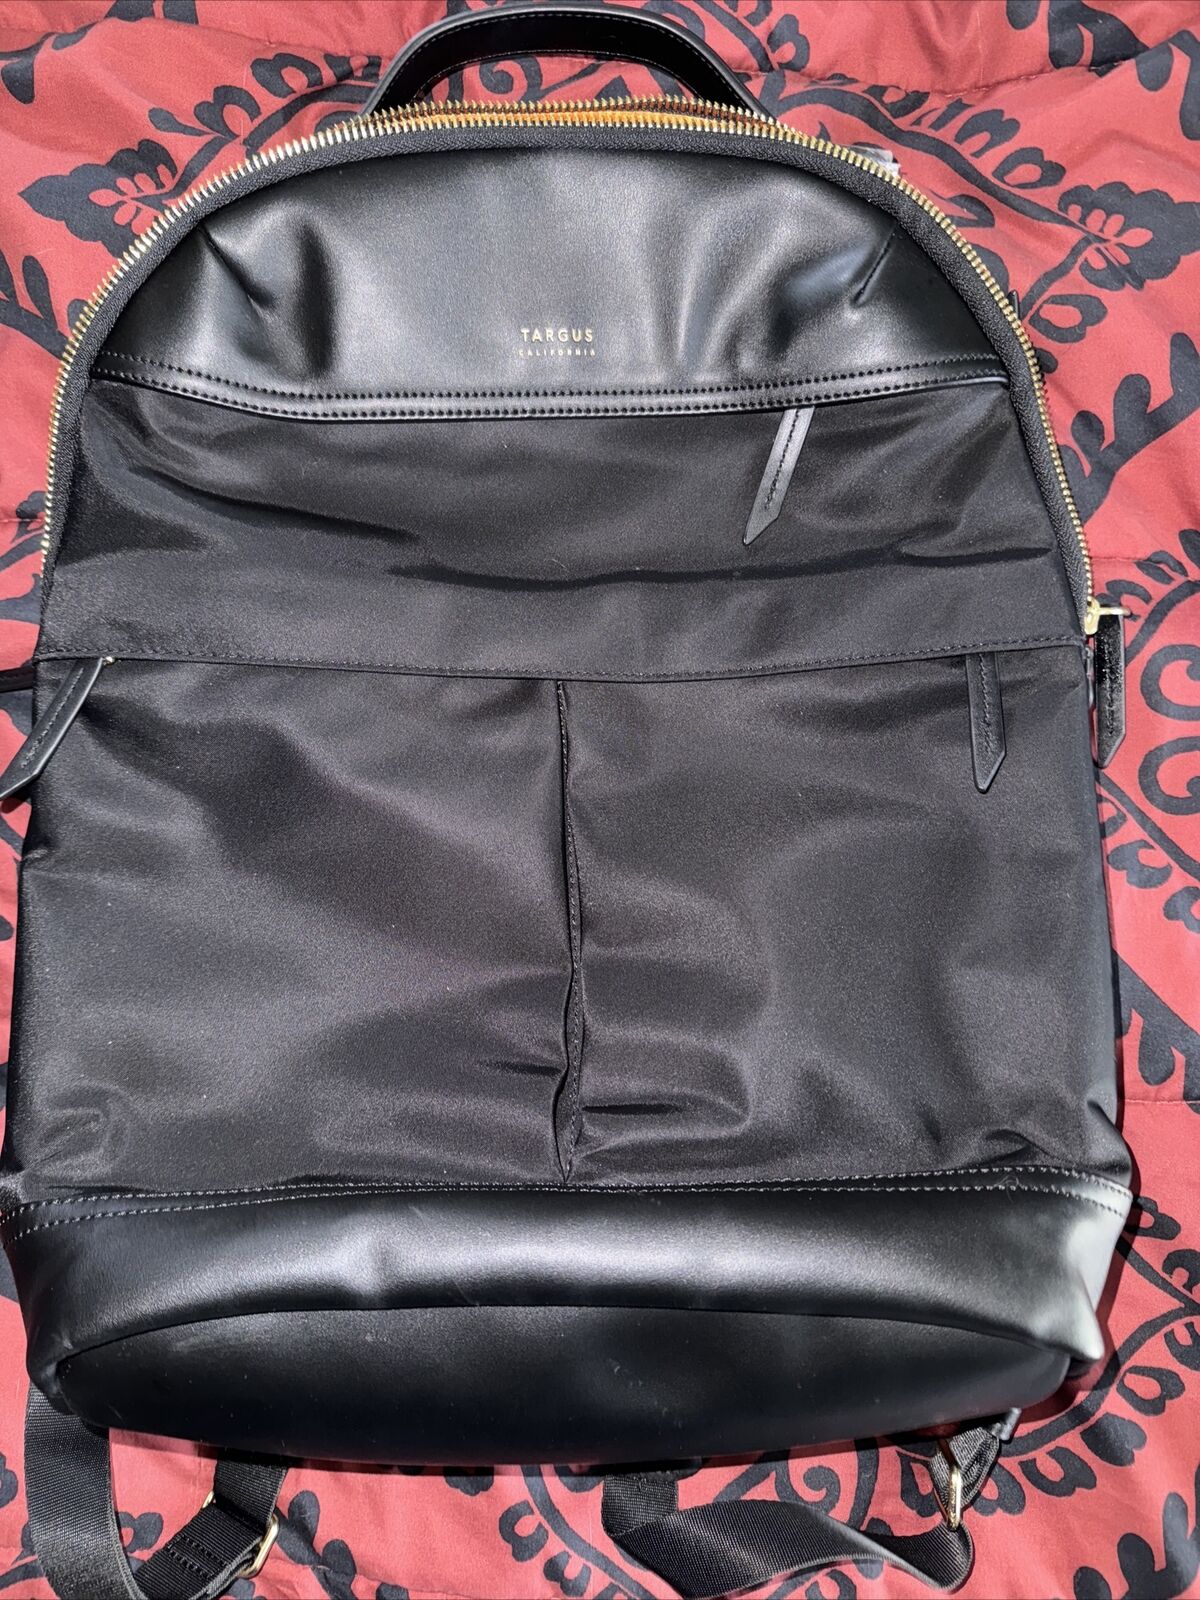 Targus backpack *New